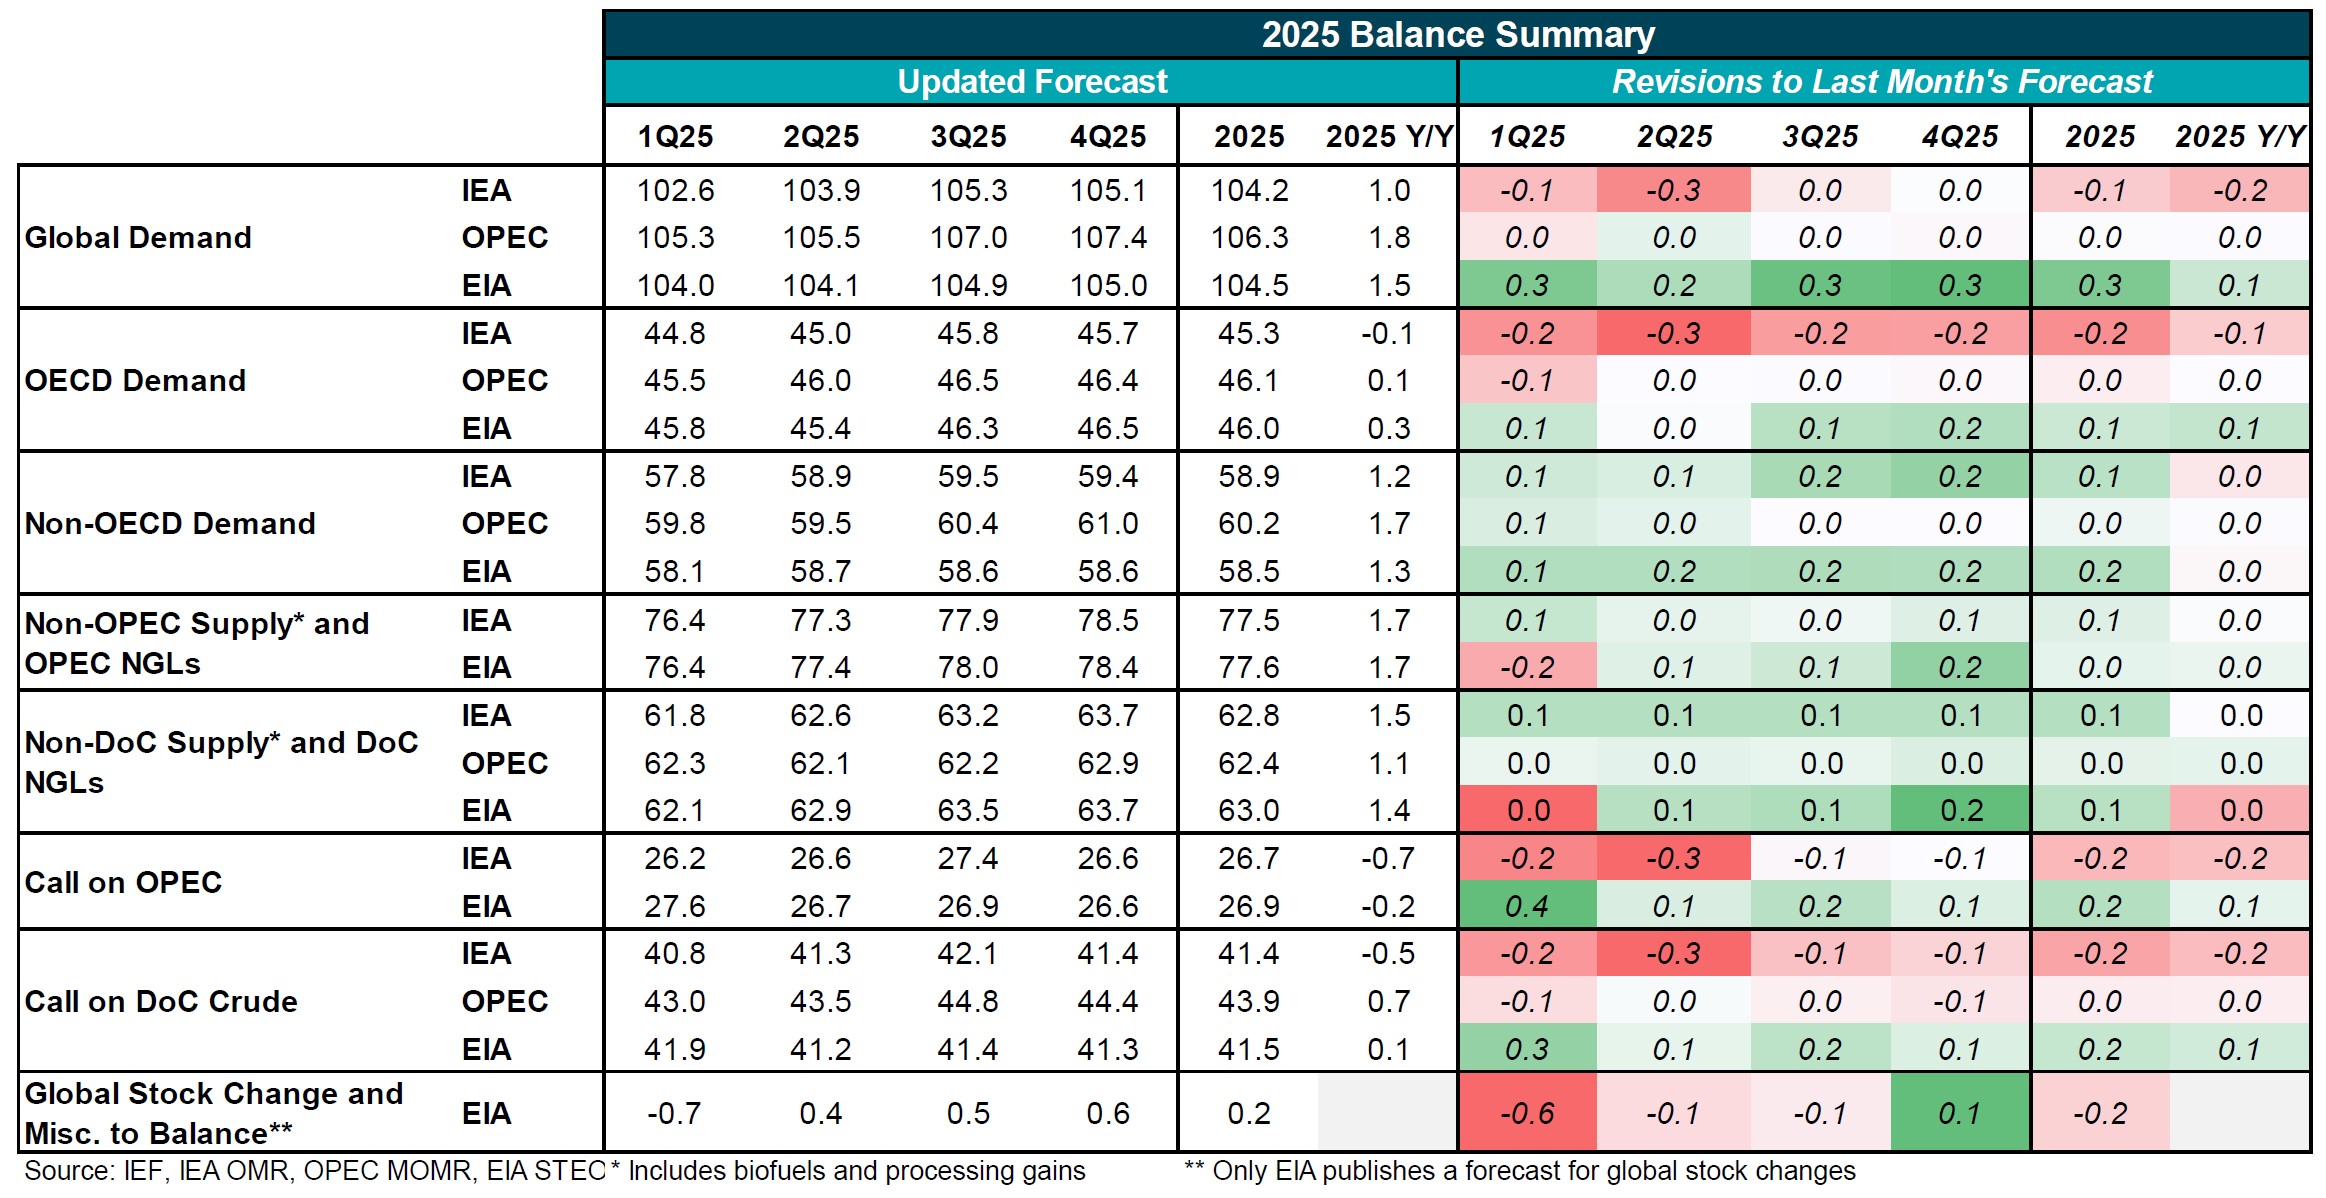 Table: 2025 Balance Summary